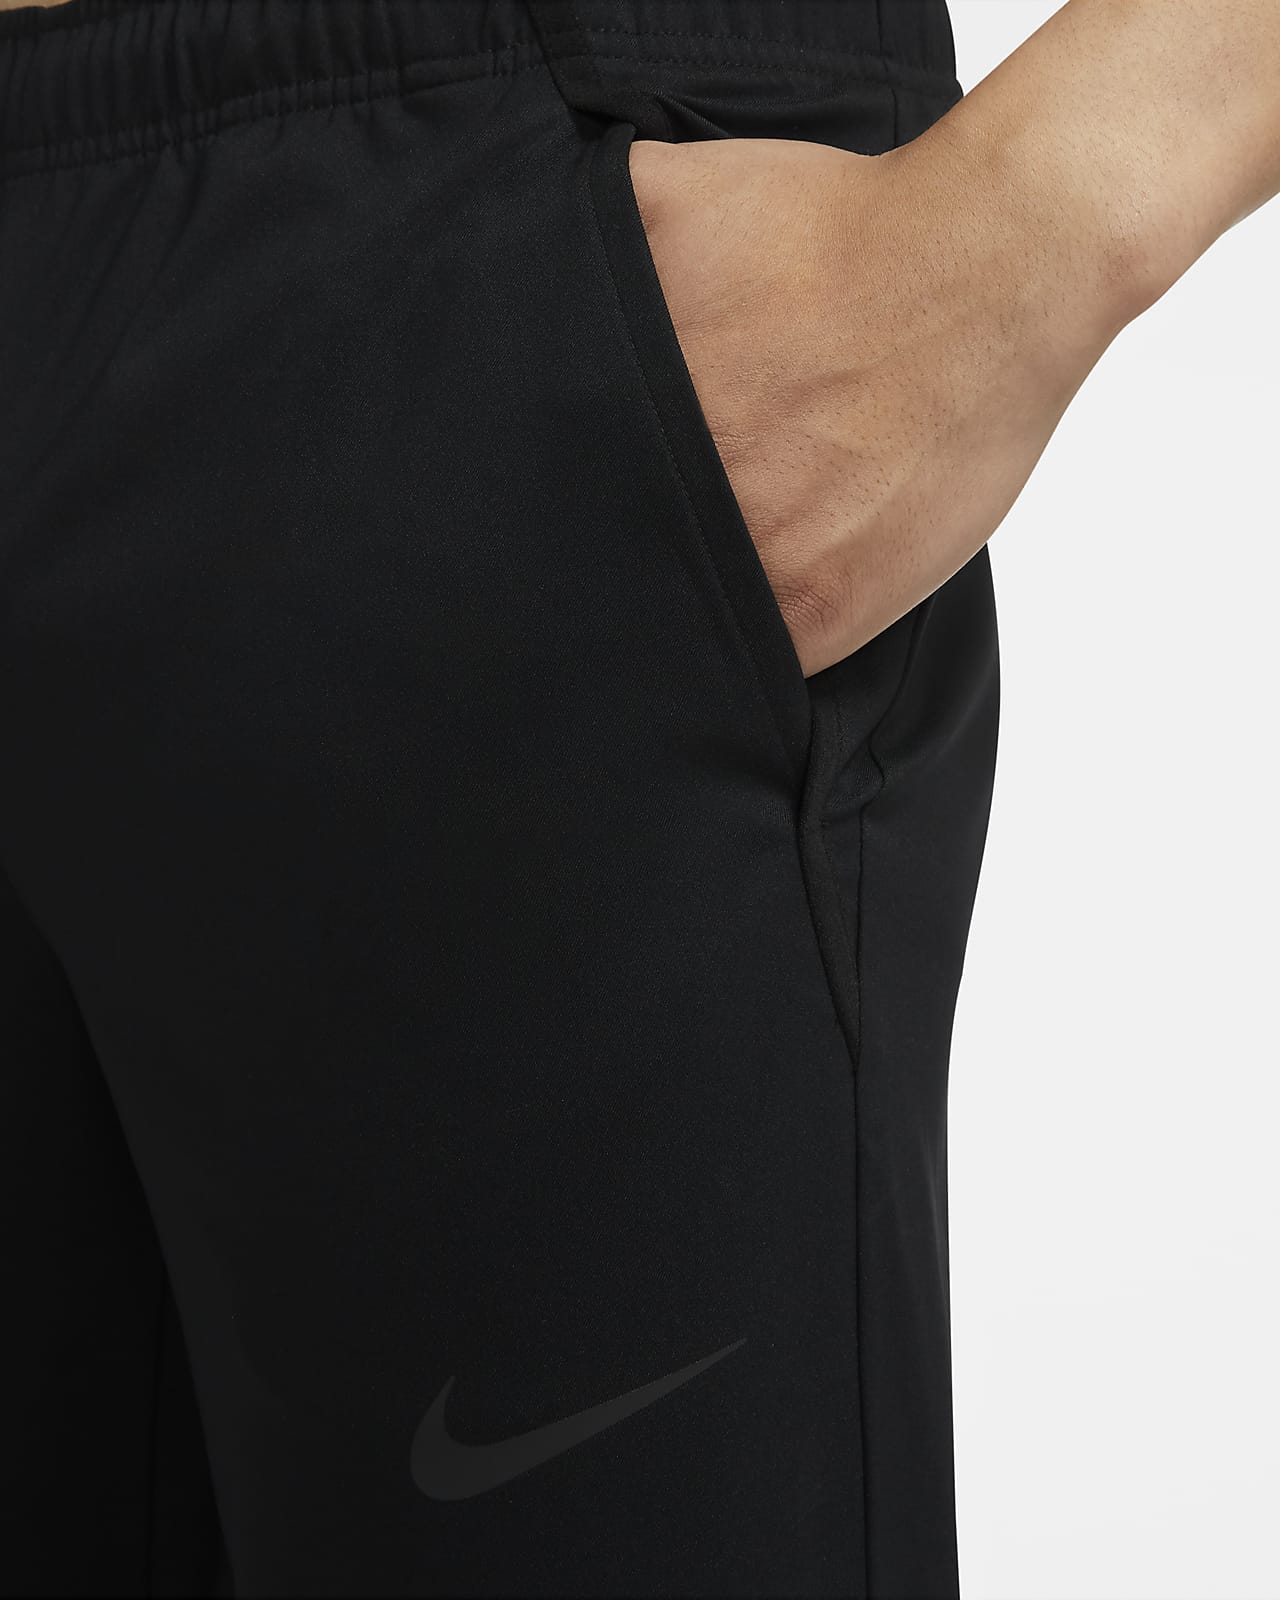 Nike Dri-FIT Men's Woven Training 